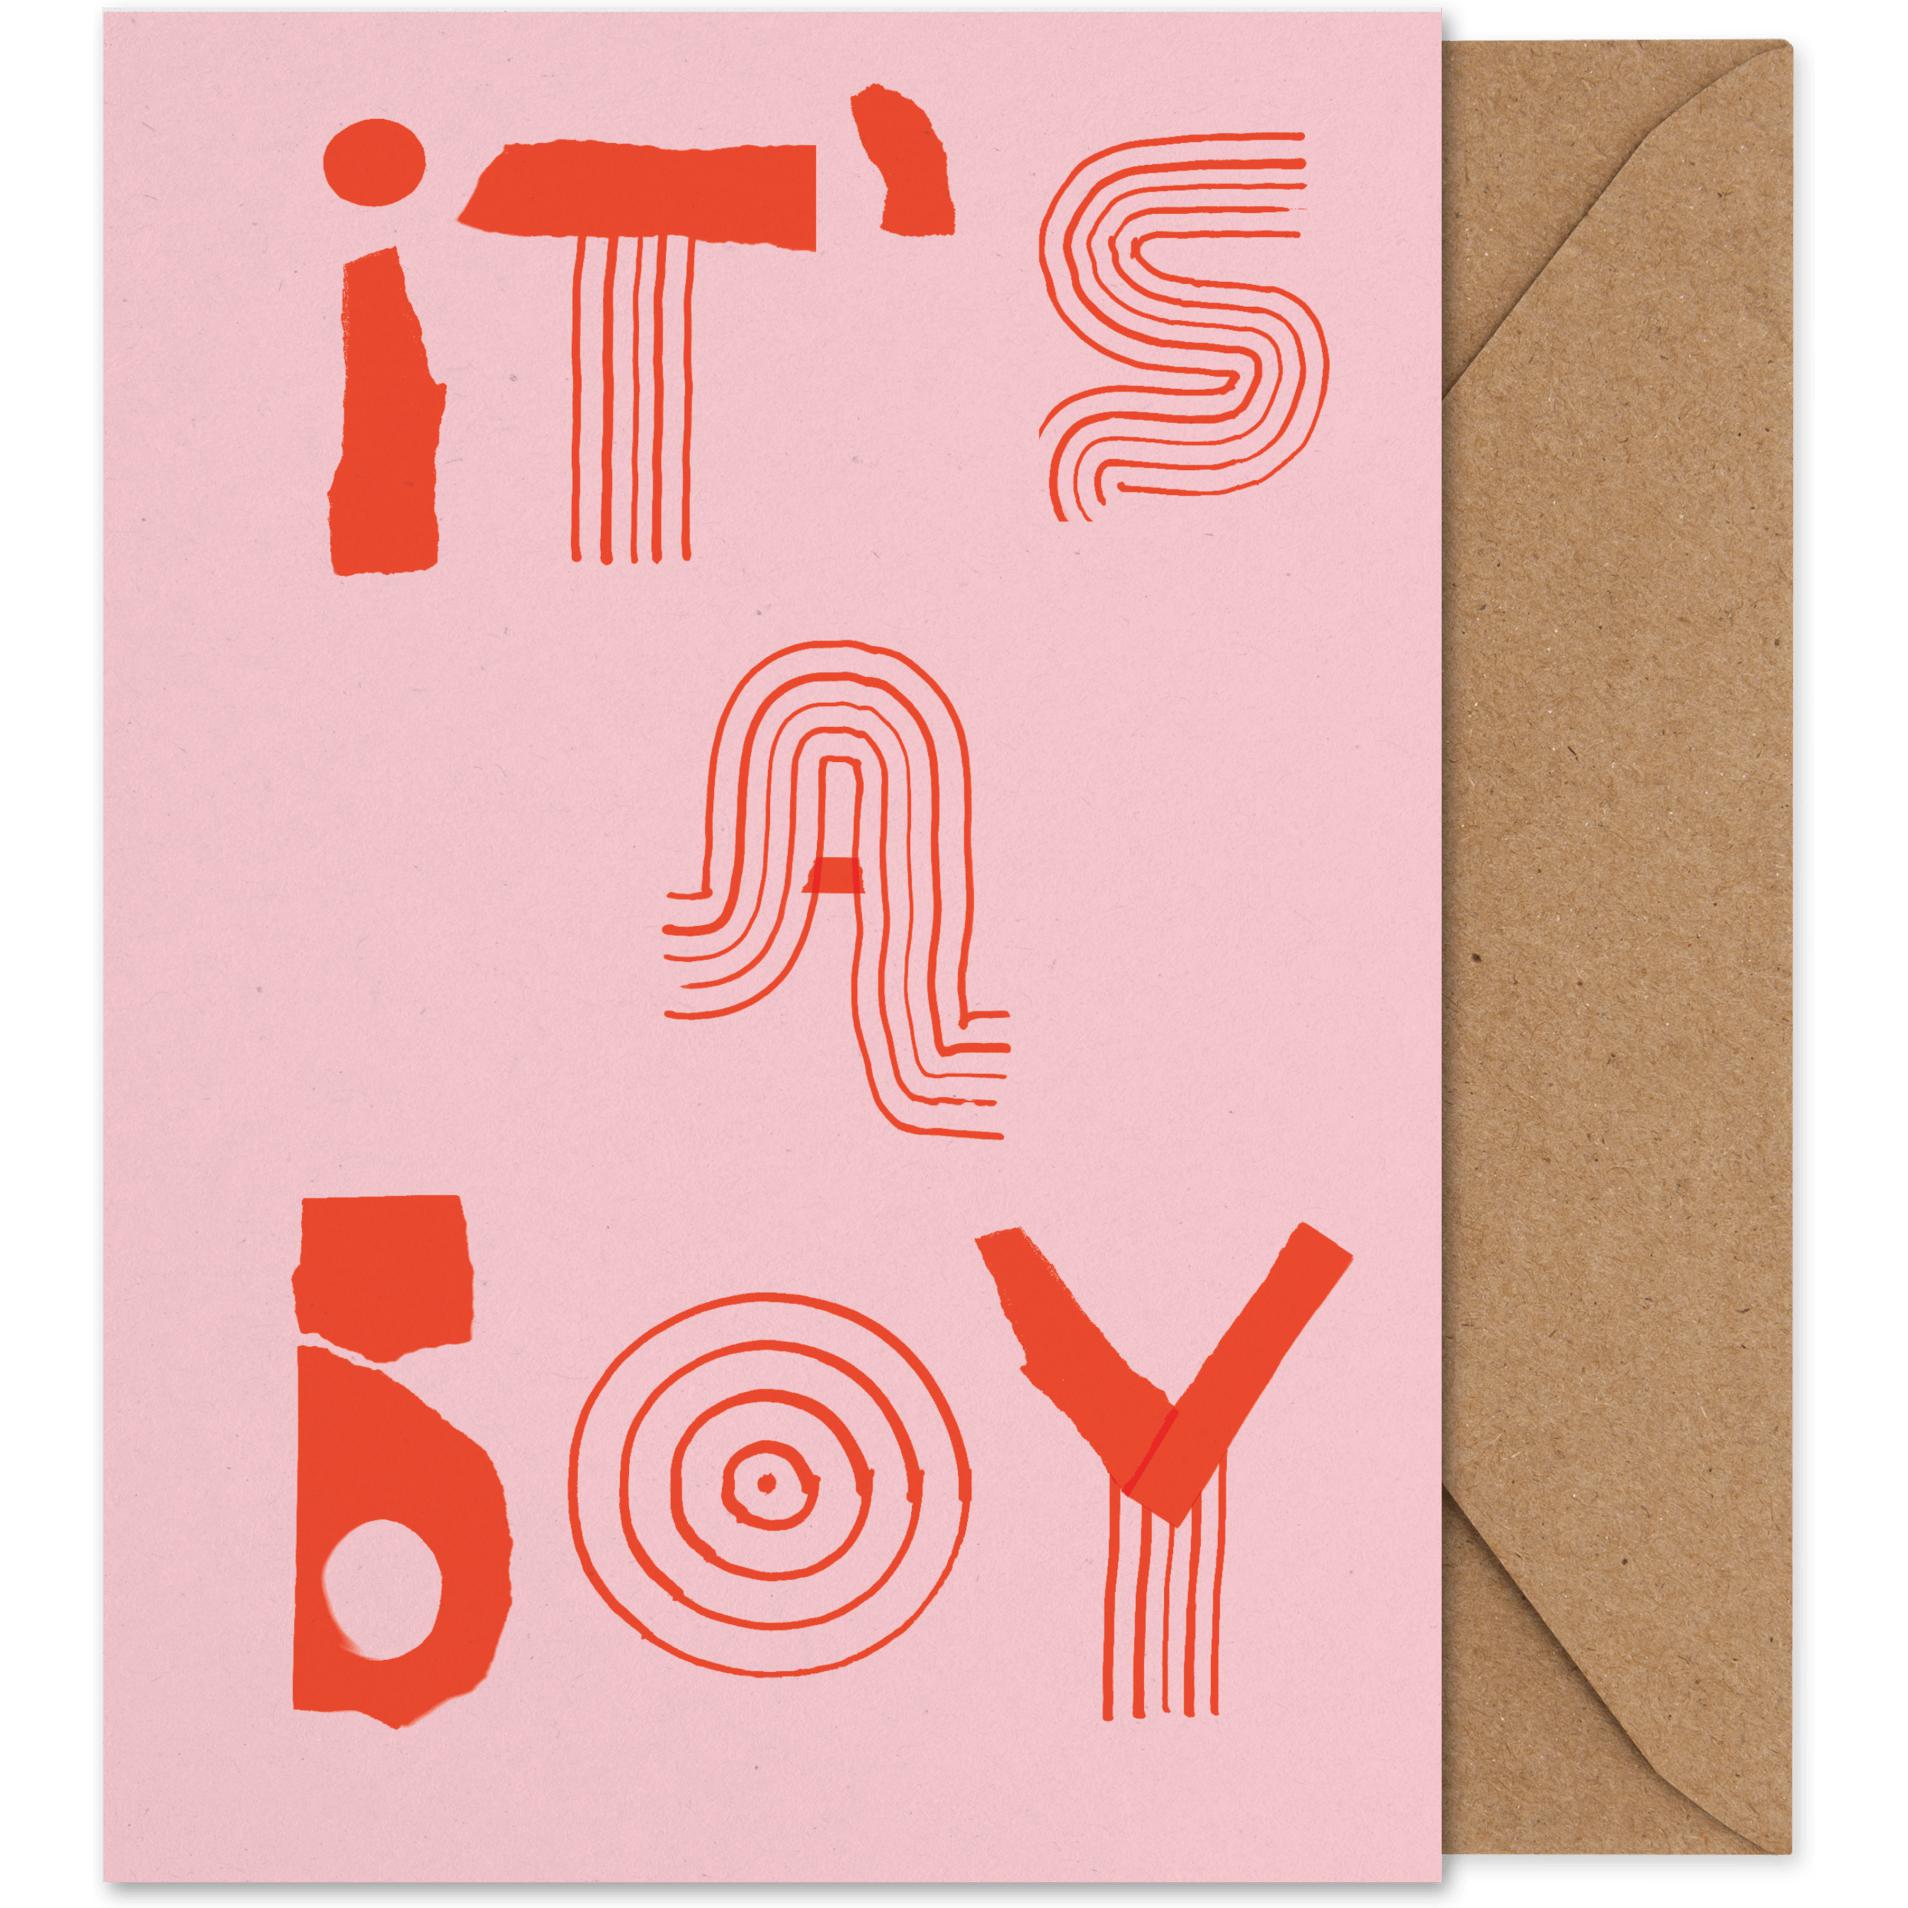 Papirkollektiv Det er et drengekunstkort